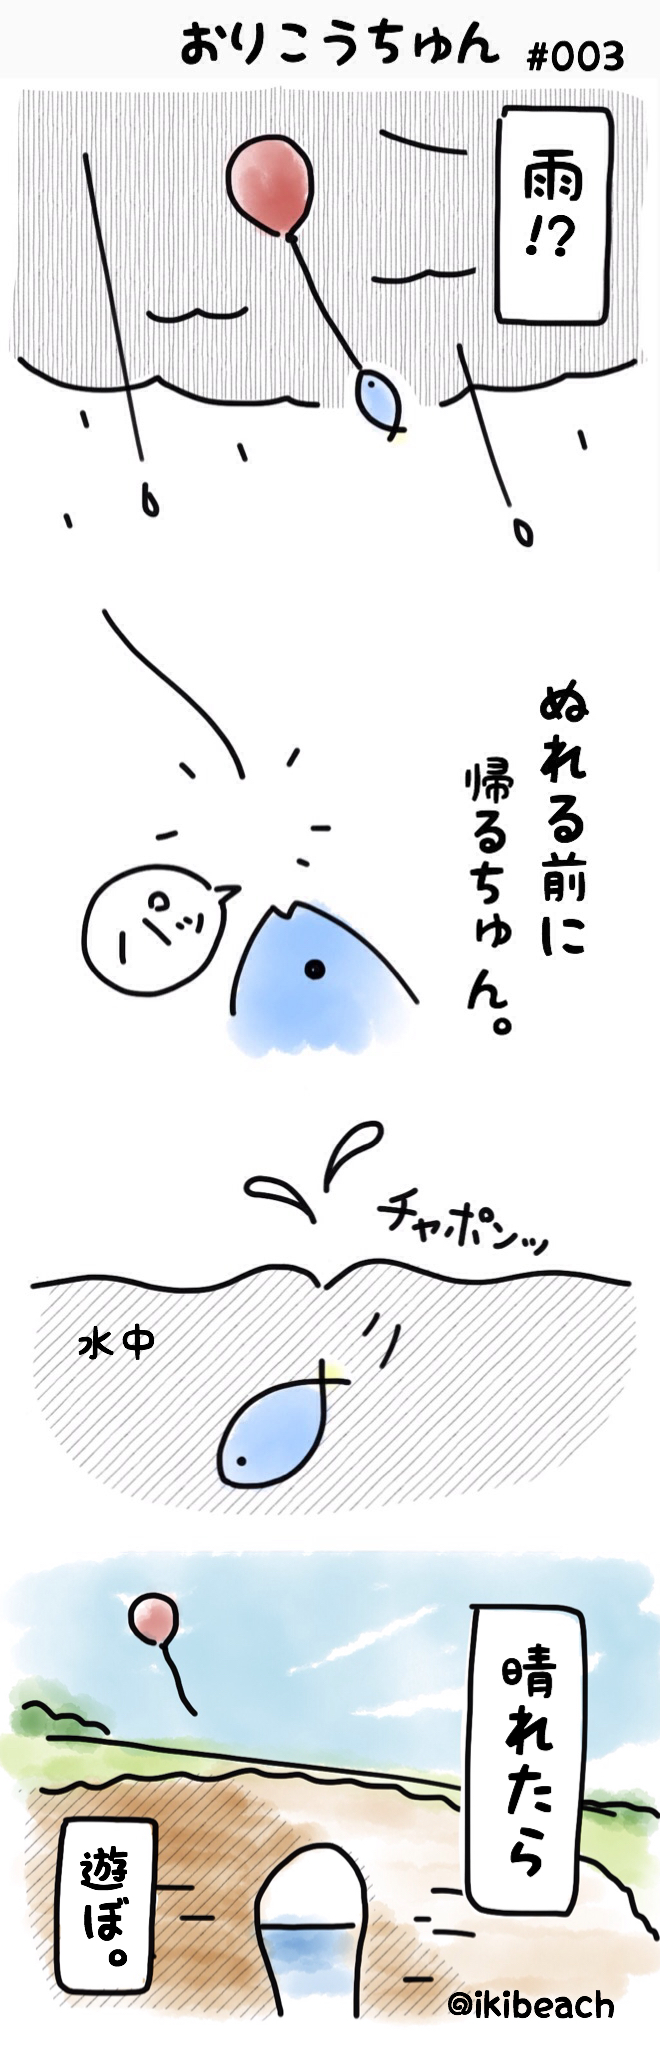 コバルト漫画「お魚だもの。」No.003『おりこうちゅん』